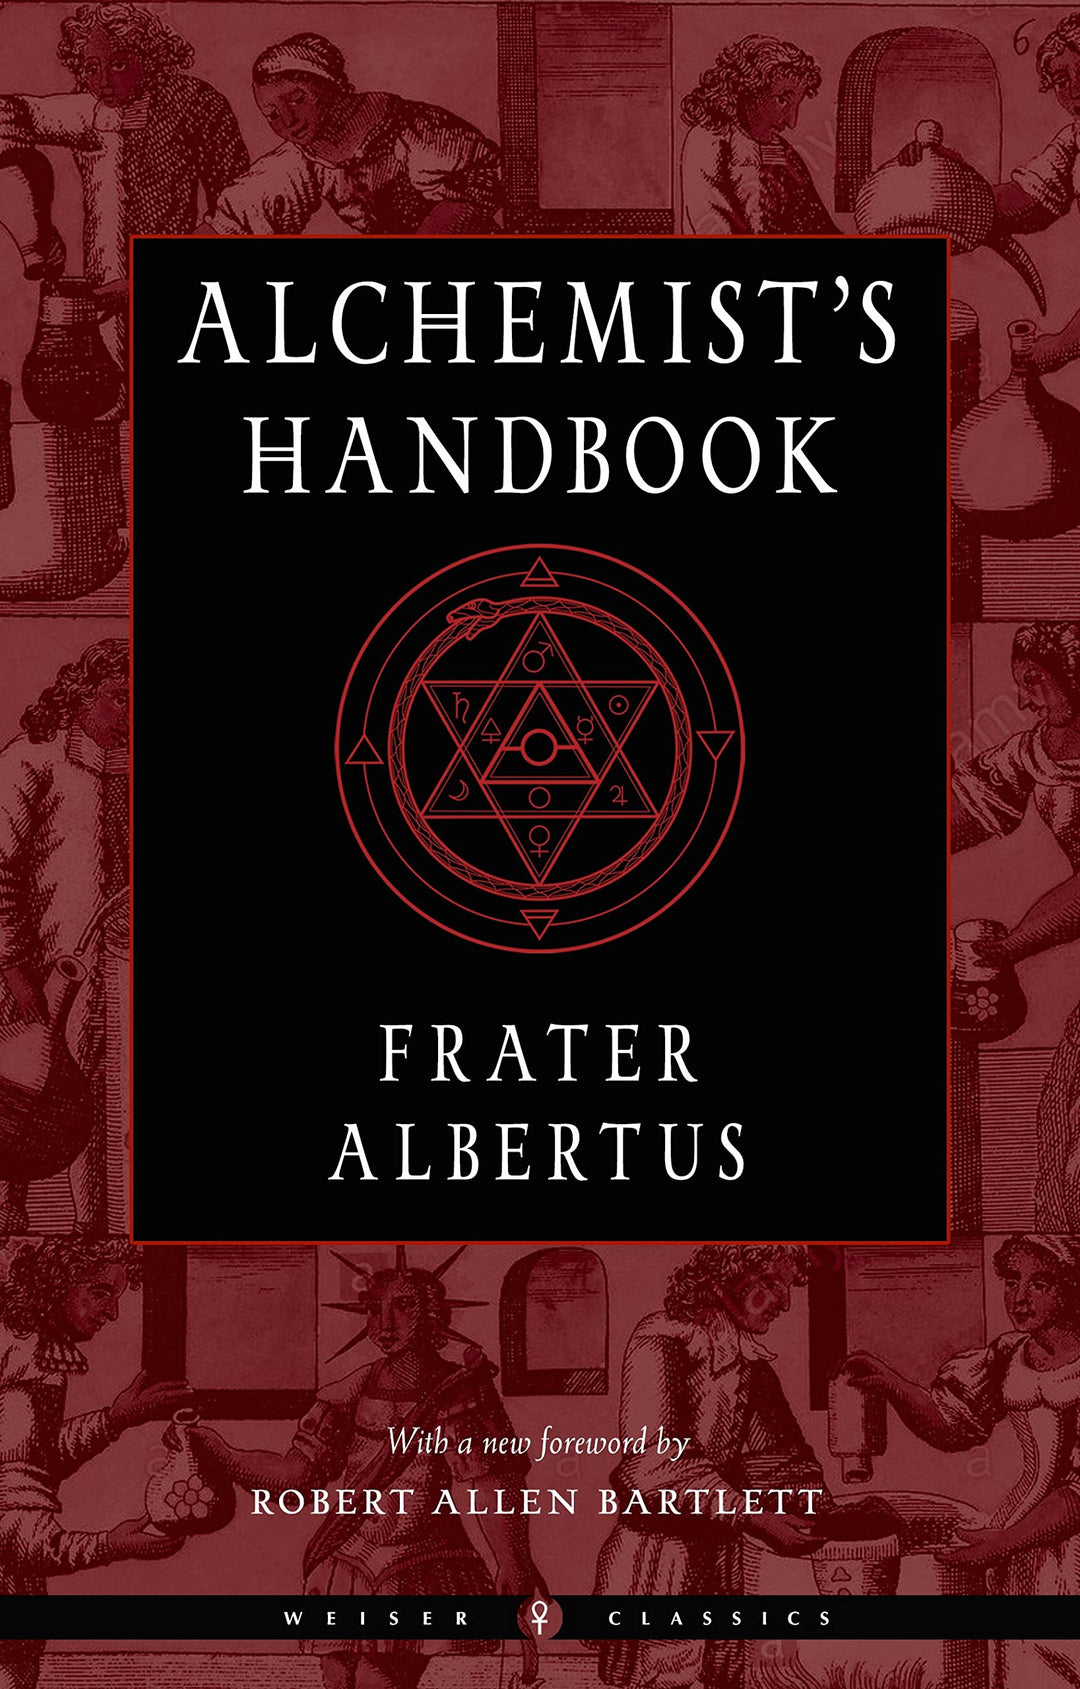 Alchemist's Handbook by Frater Albertus